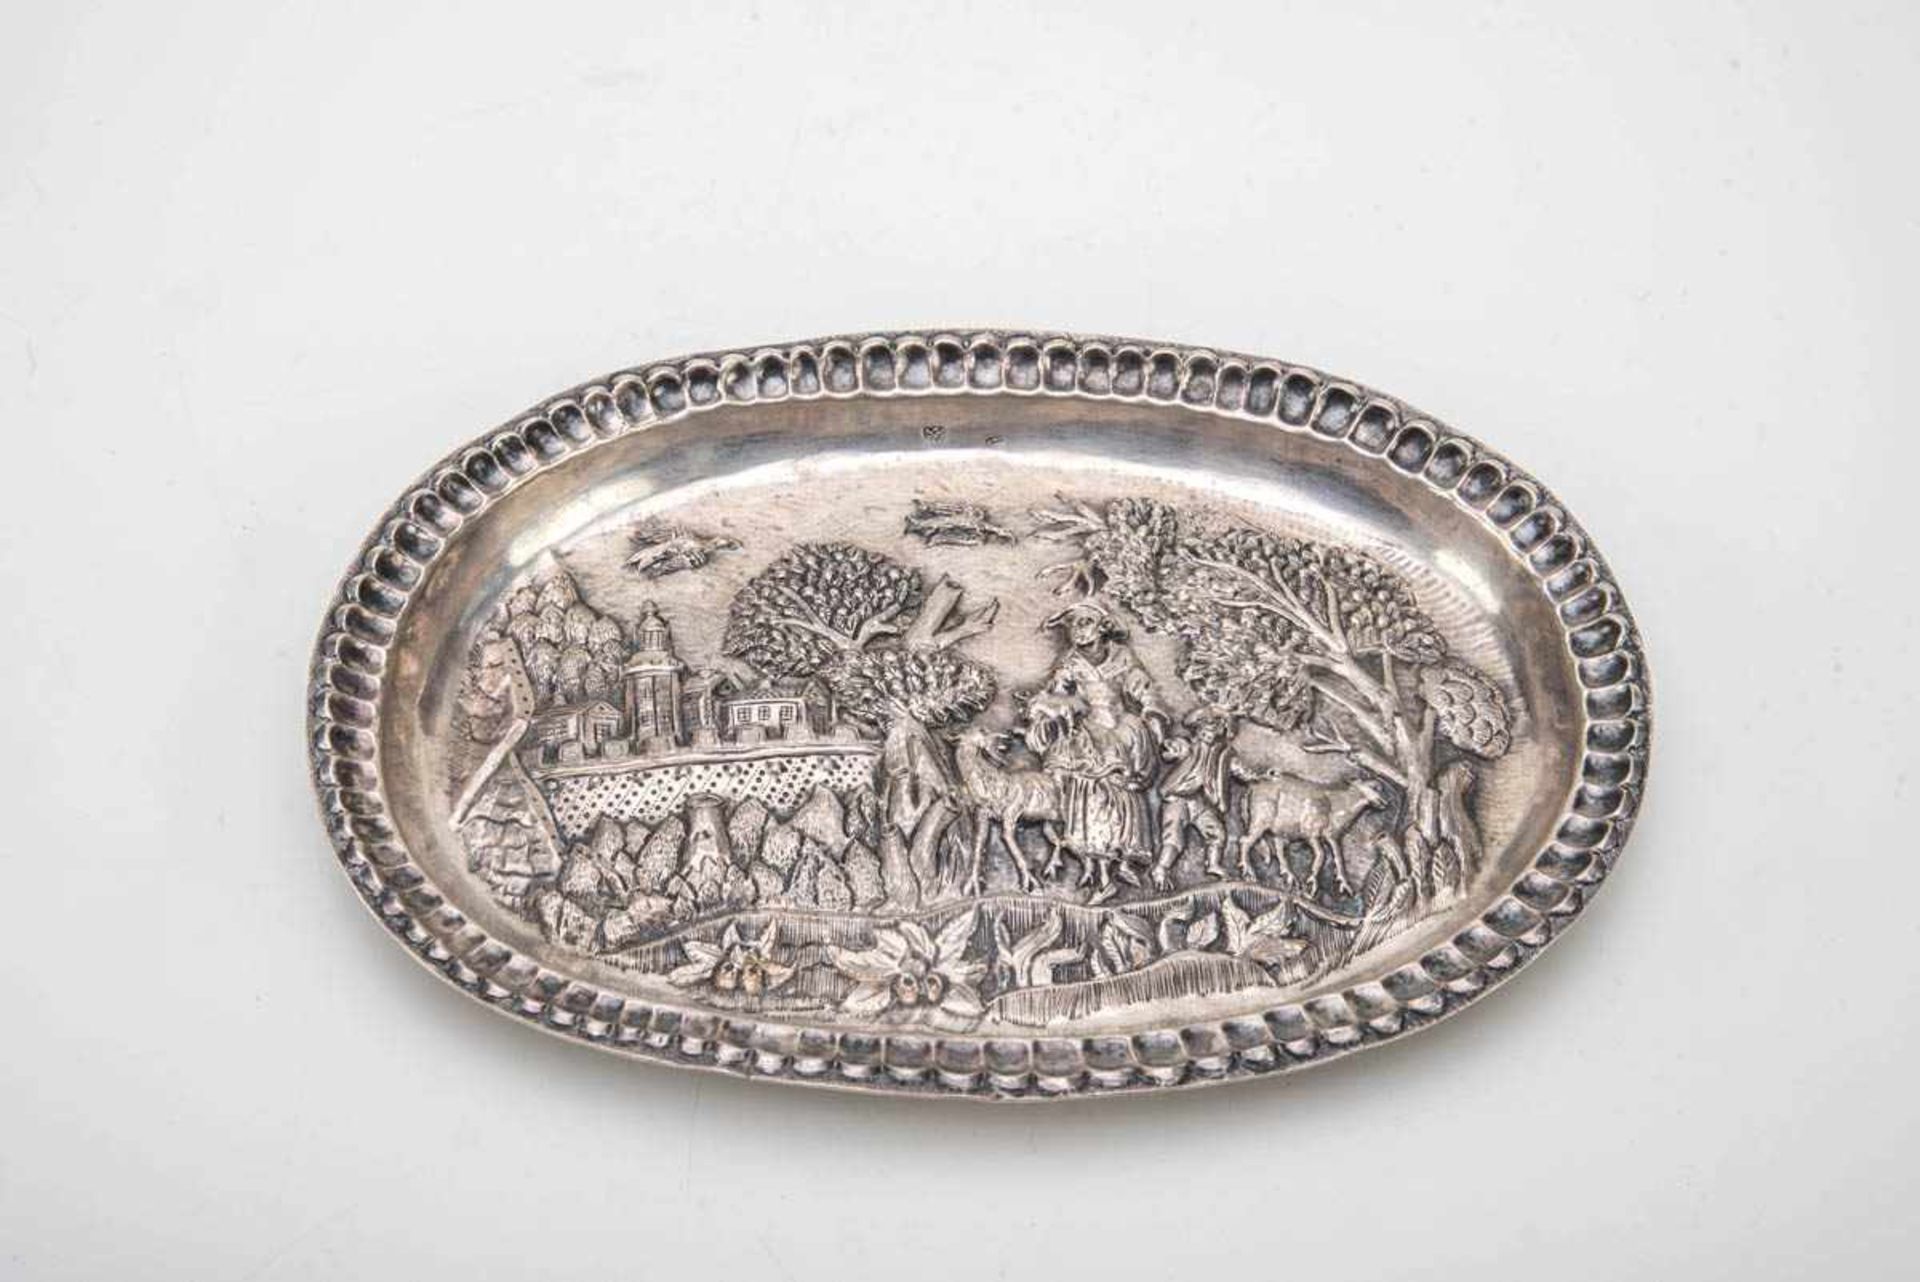 Ziertablett, wohl Rußland 18. Jh.Silber. Ovaler Spiegel mit Reliefdarstellung aus dem bäuerlichen